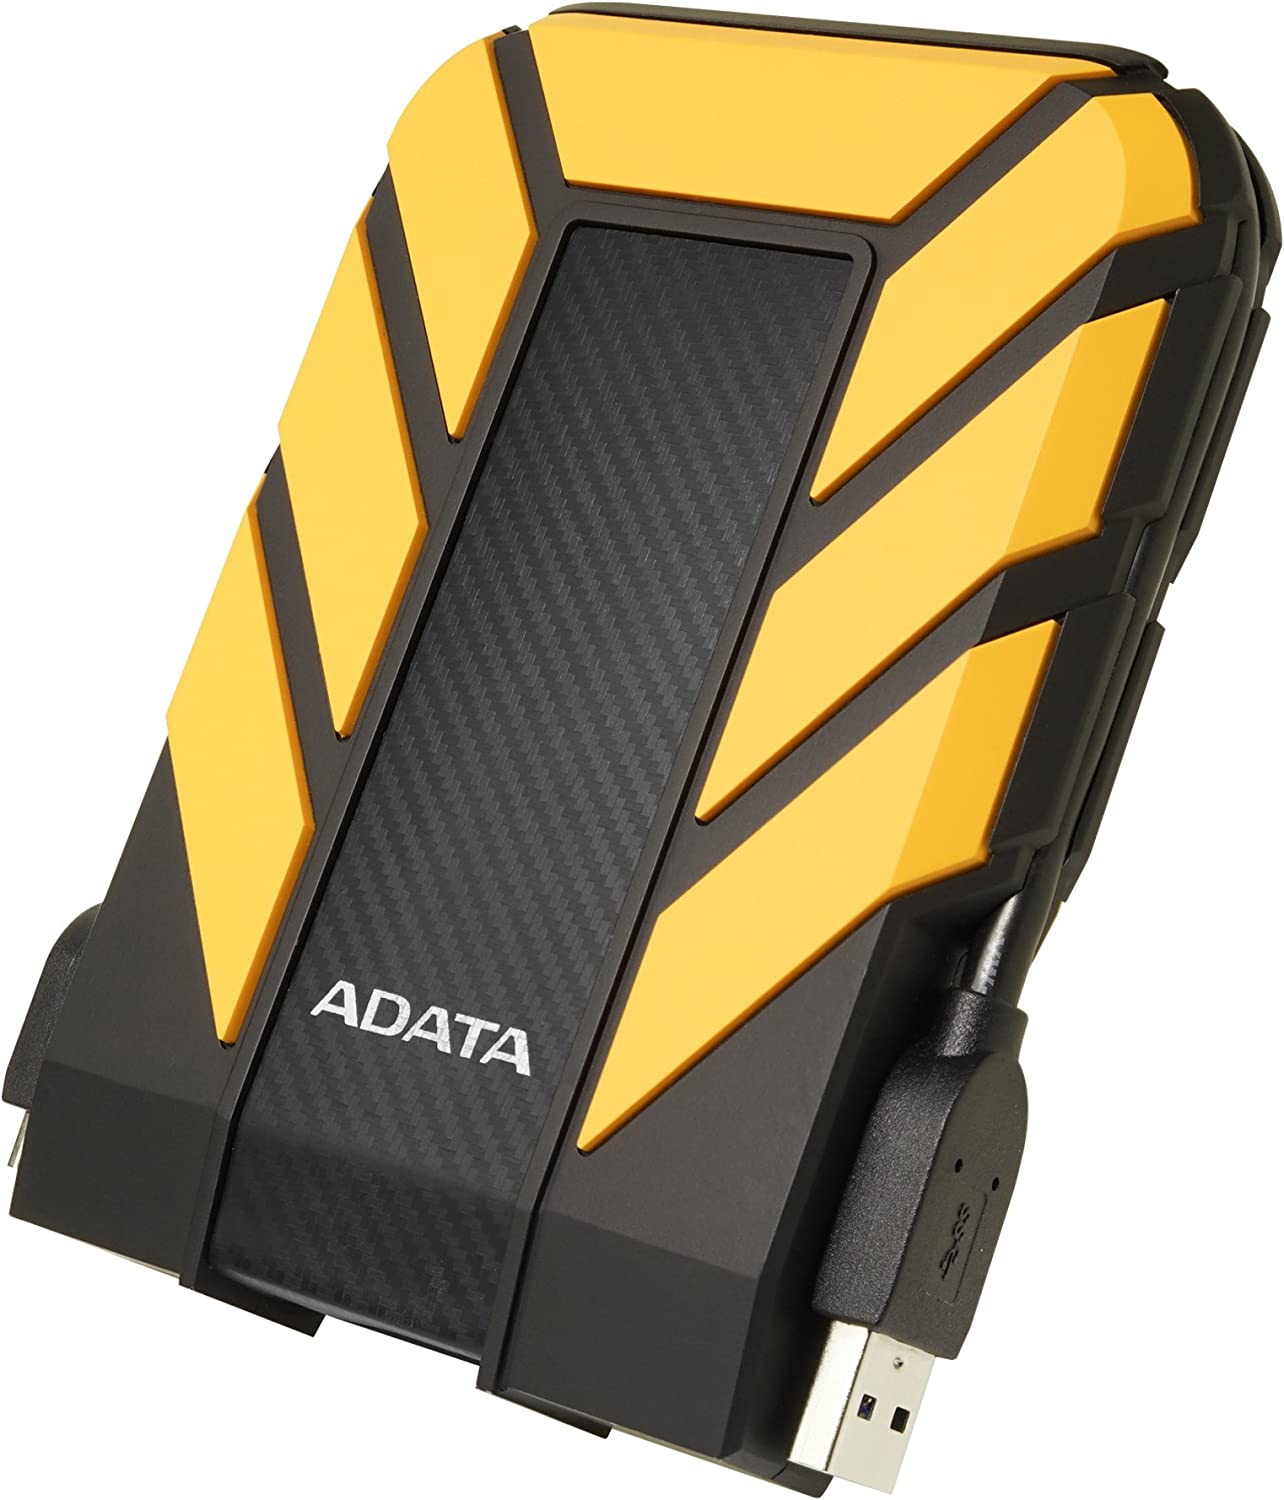 ADATA Disco Duro Externo HDD HD710P, 2 TB, Resistente a golpes,agua y polvo, certificación grado militar, Color Amarillo